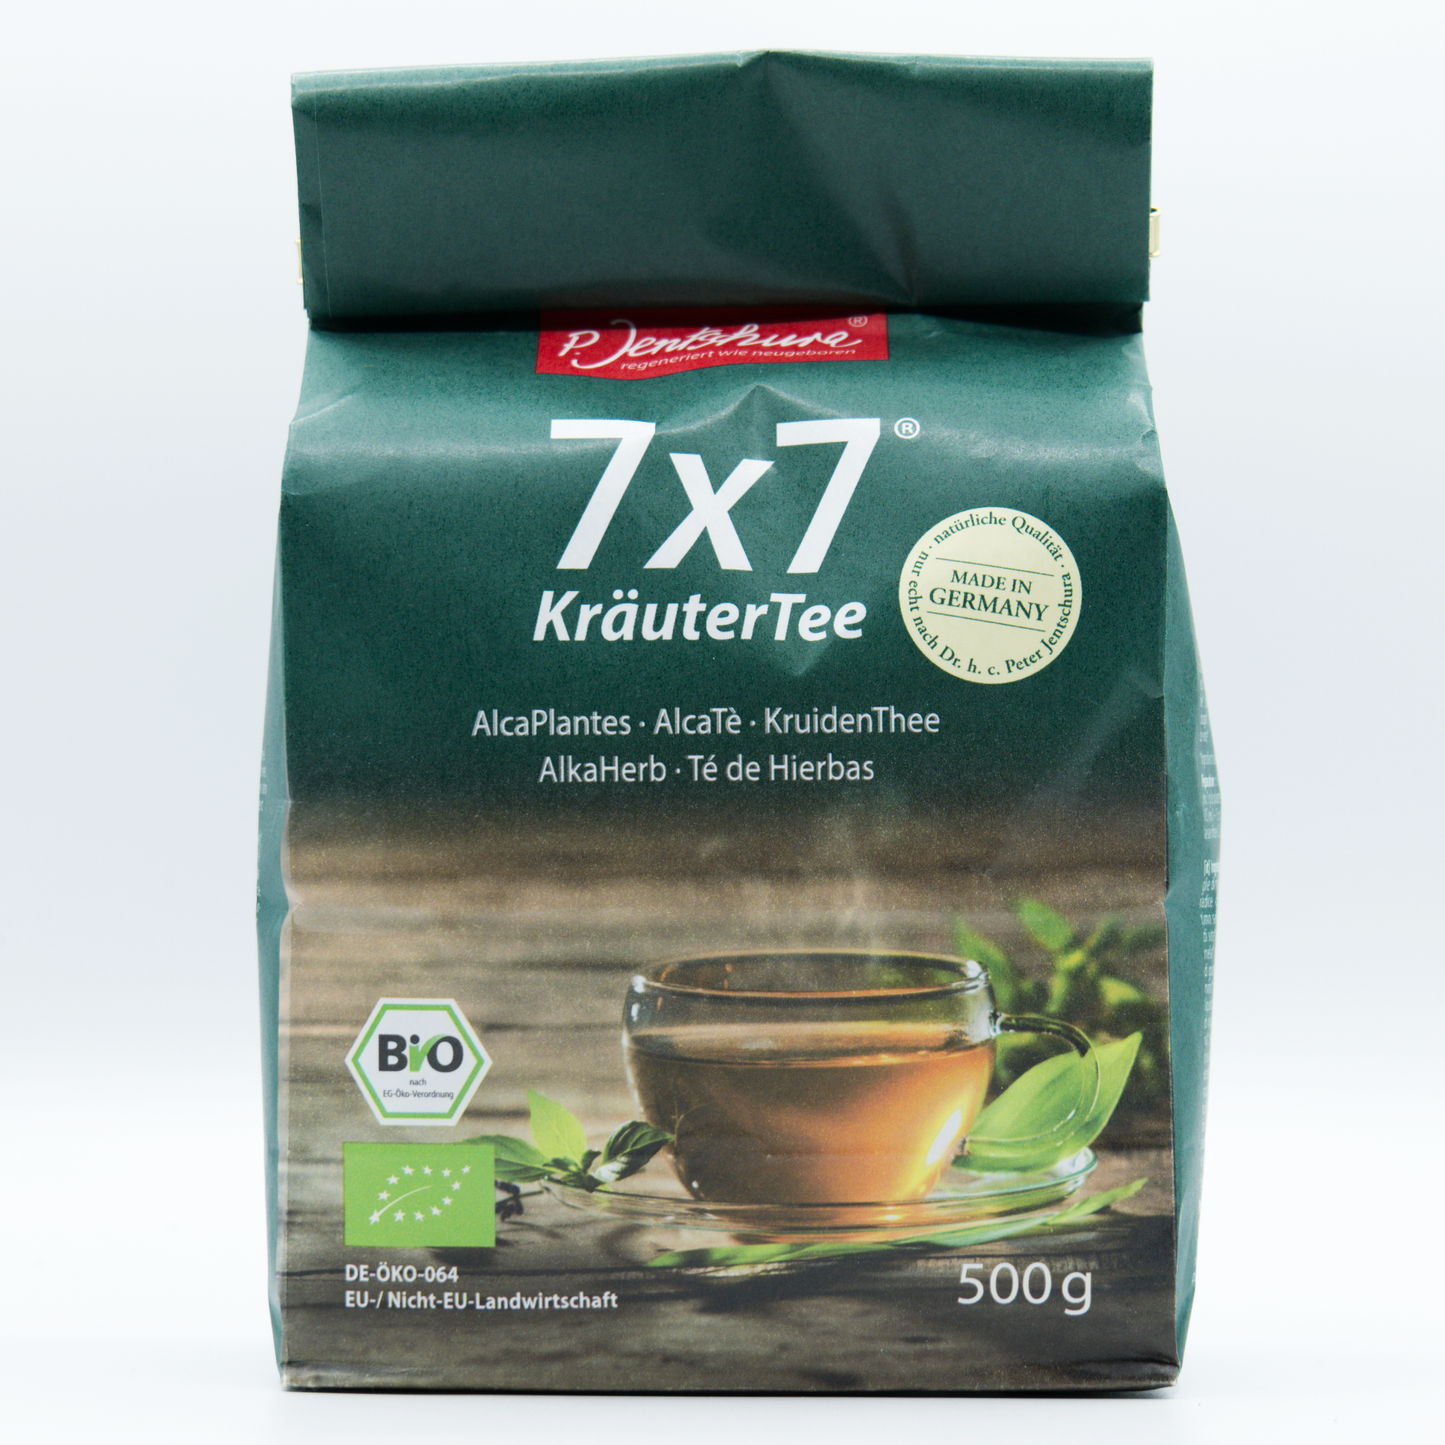 7x7 Kräuter Tee,  P.Jentschura 500g